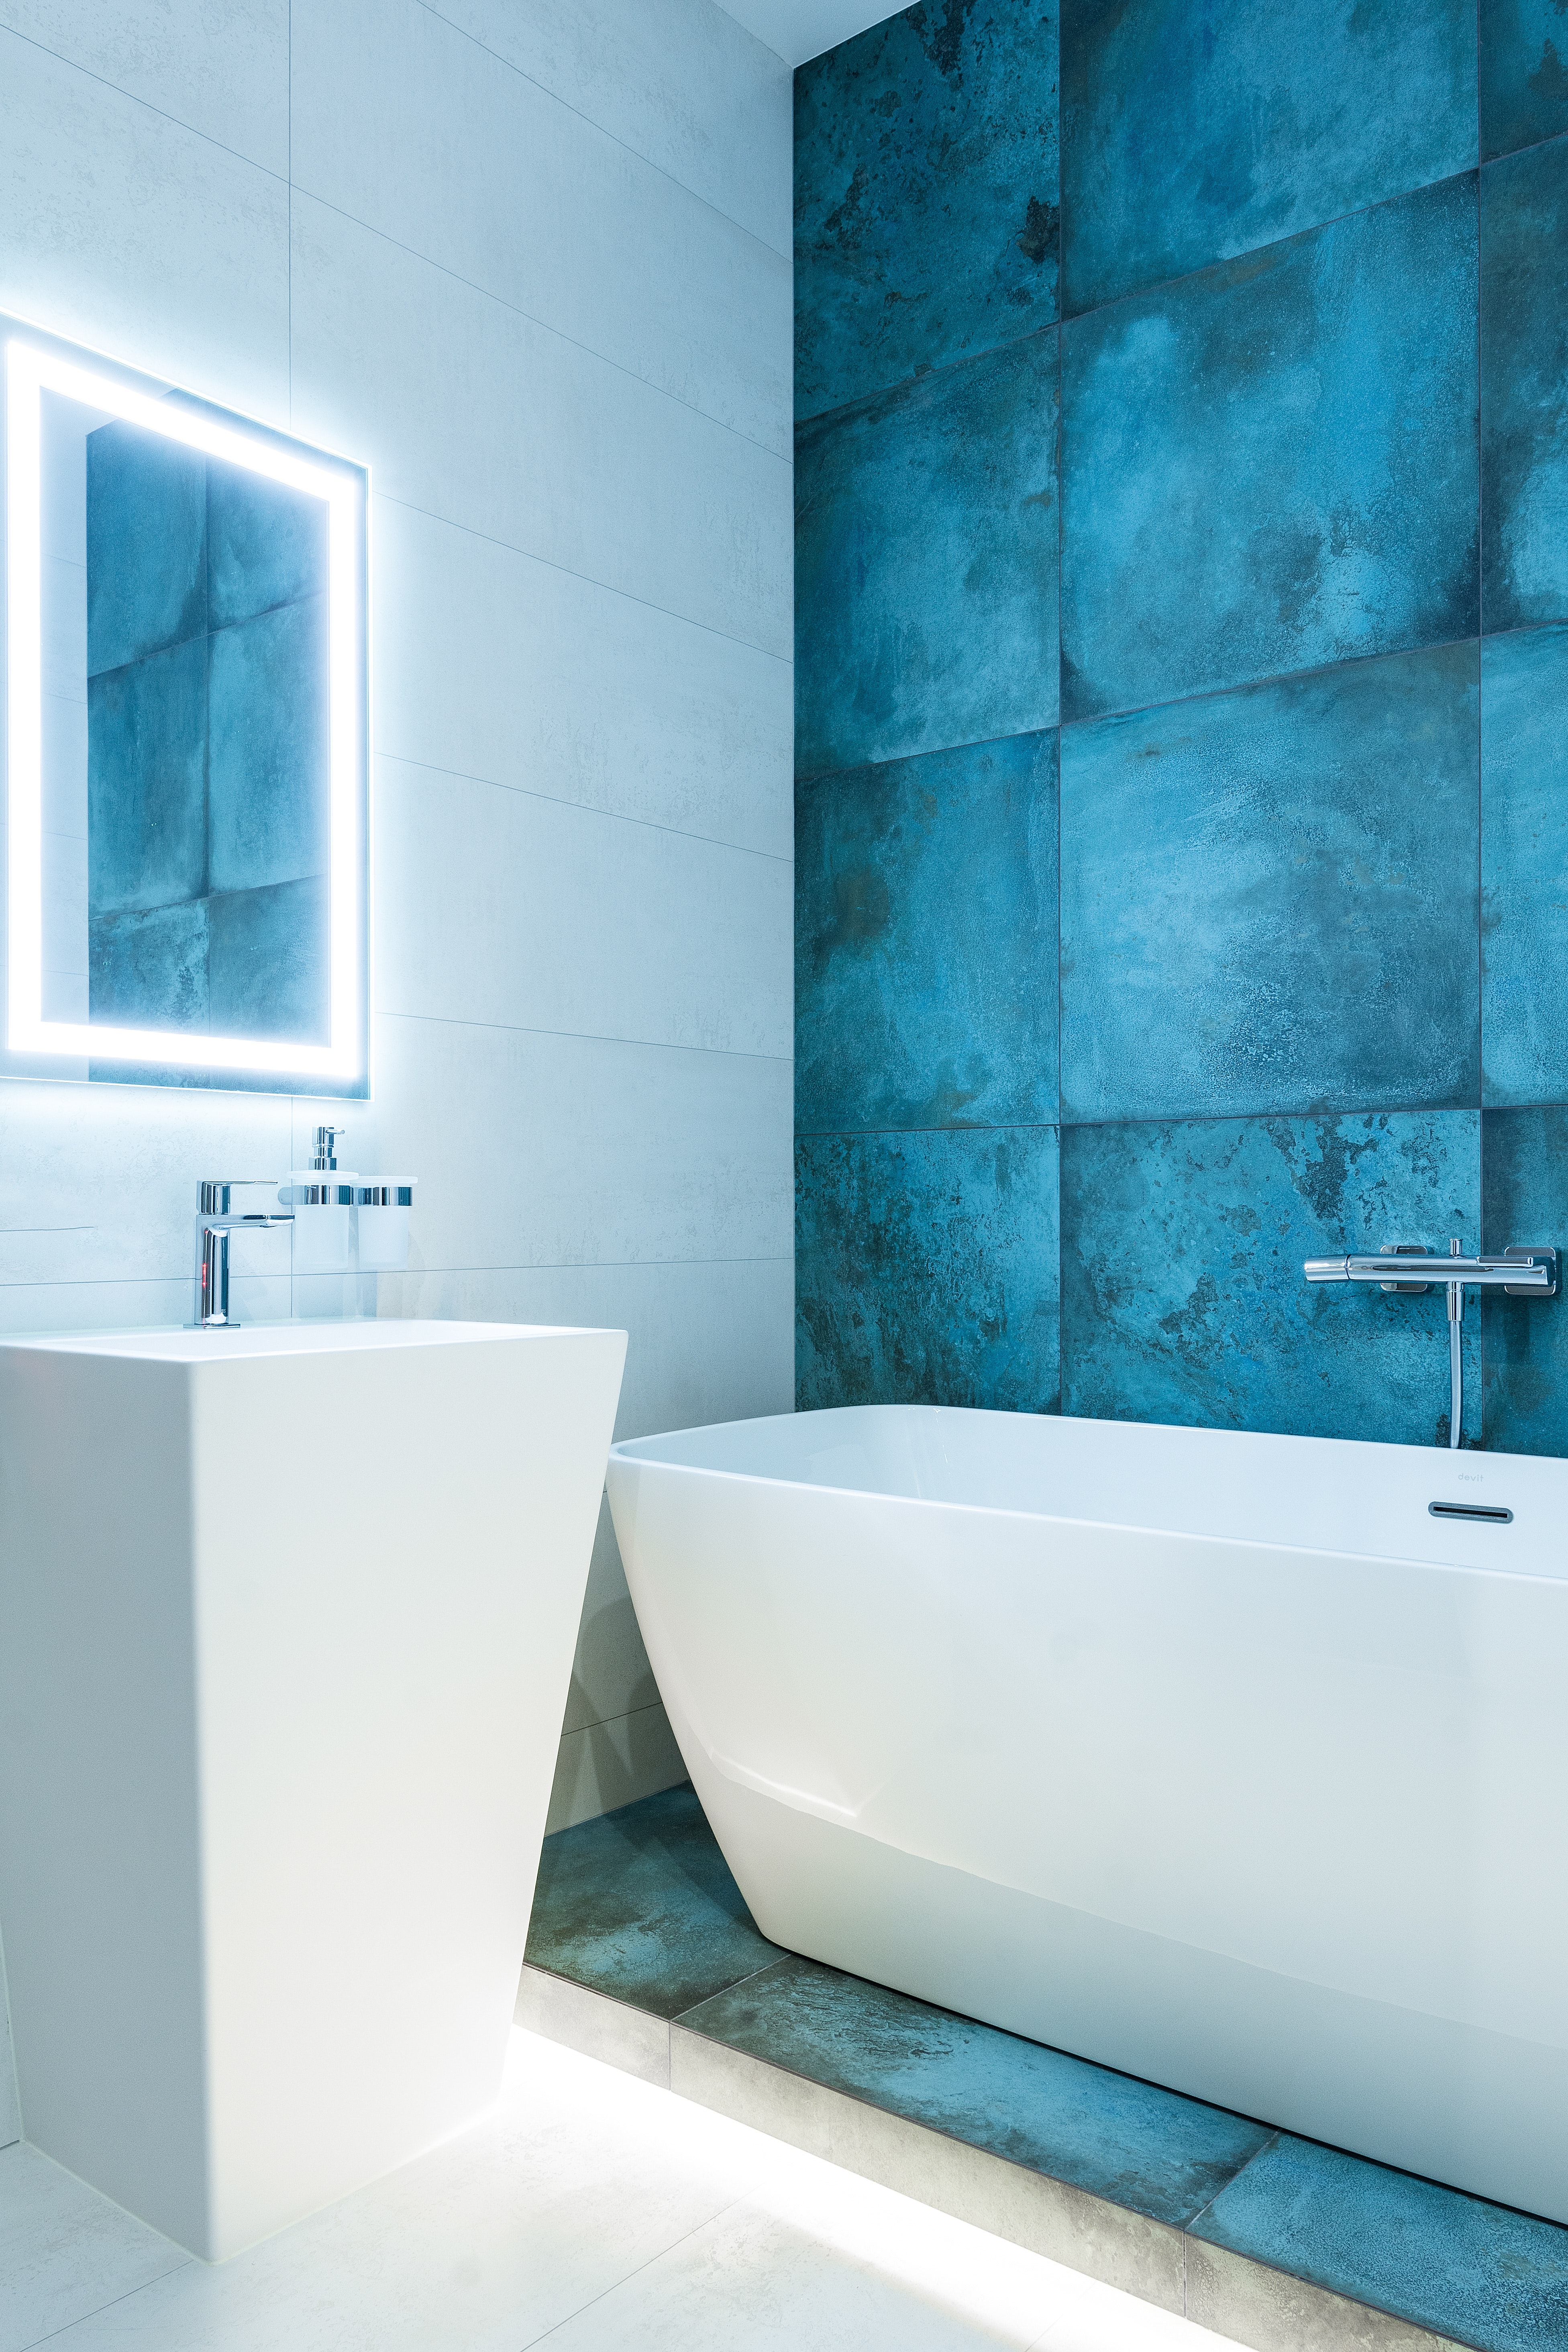 В зеркале отражается цветная стена, яркий дизайнерский акцент для ванной небольшого размера. 